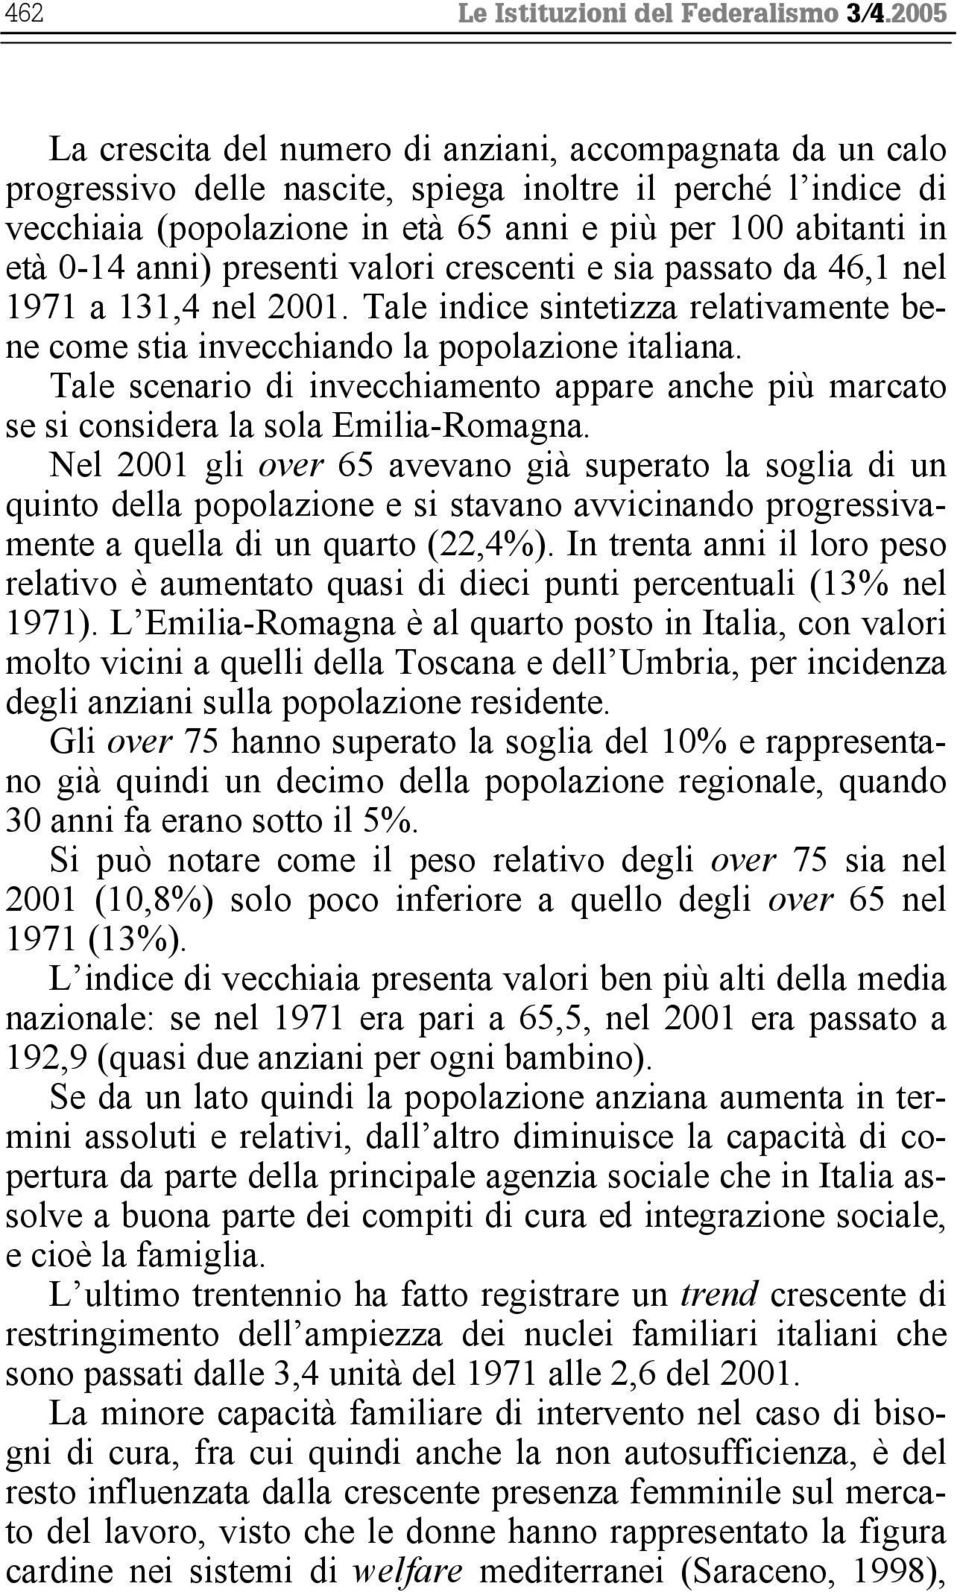 0-14 anni) presenti valori crescenti e sia passato da 46,1 nel 1971 a 131,4 nel 2001. Tale indice sintetizza relativamente bene come stia invecchiando la popolazione italiana.